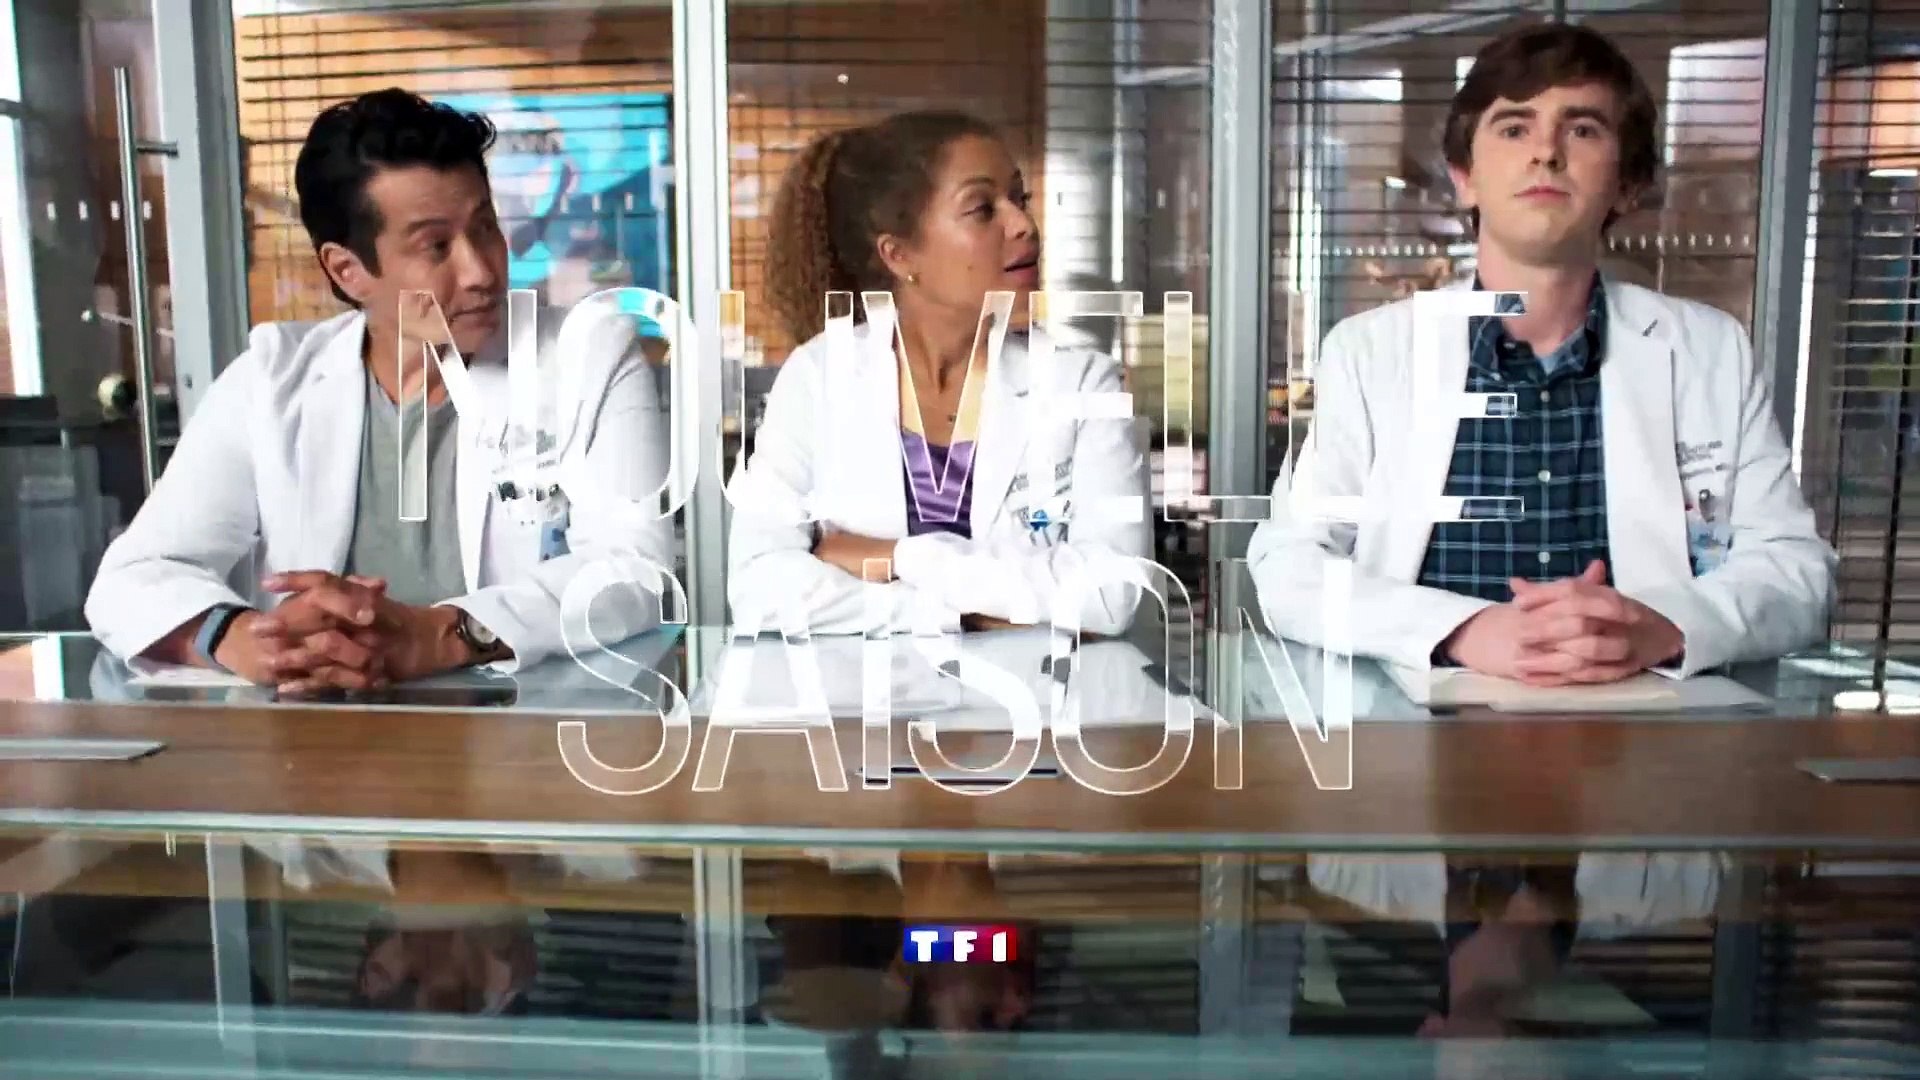 Bande-annonce de la saison 4 de "Good Doctor" - Vidéo Dailymotion